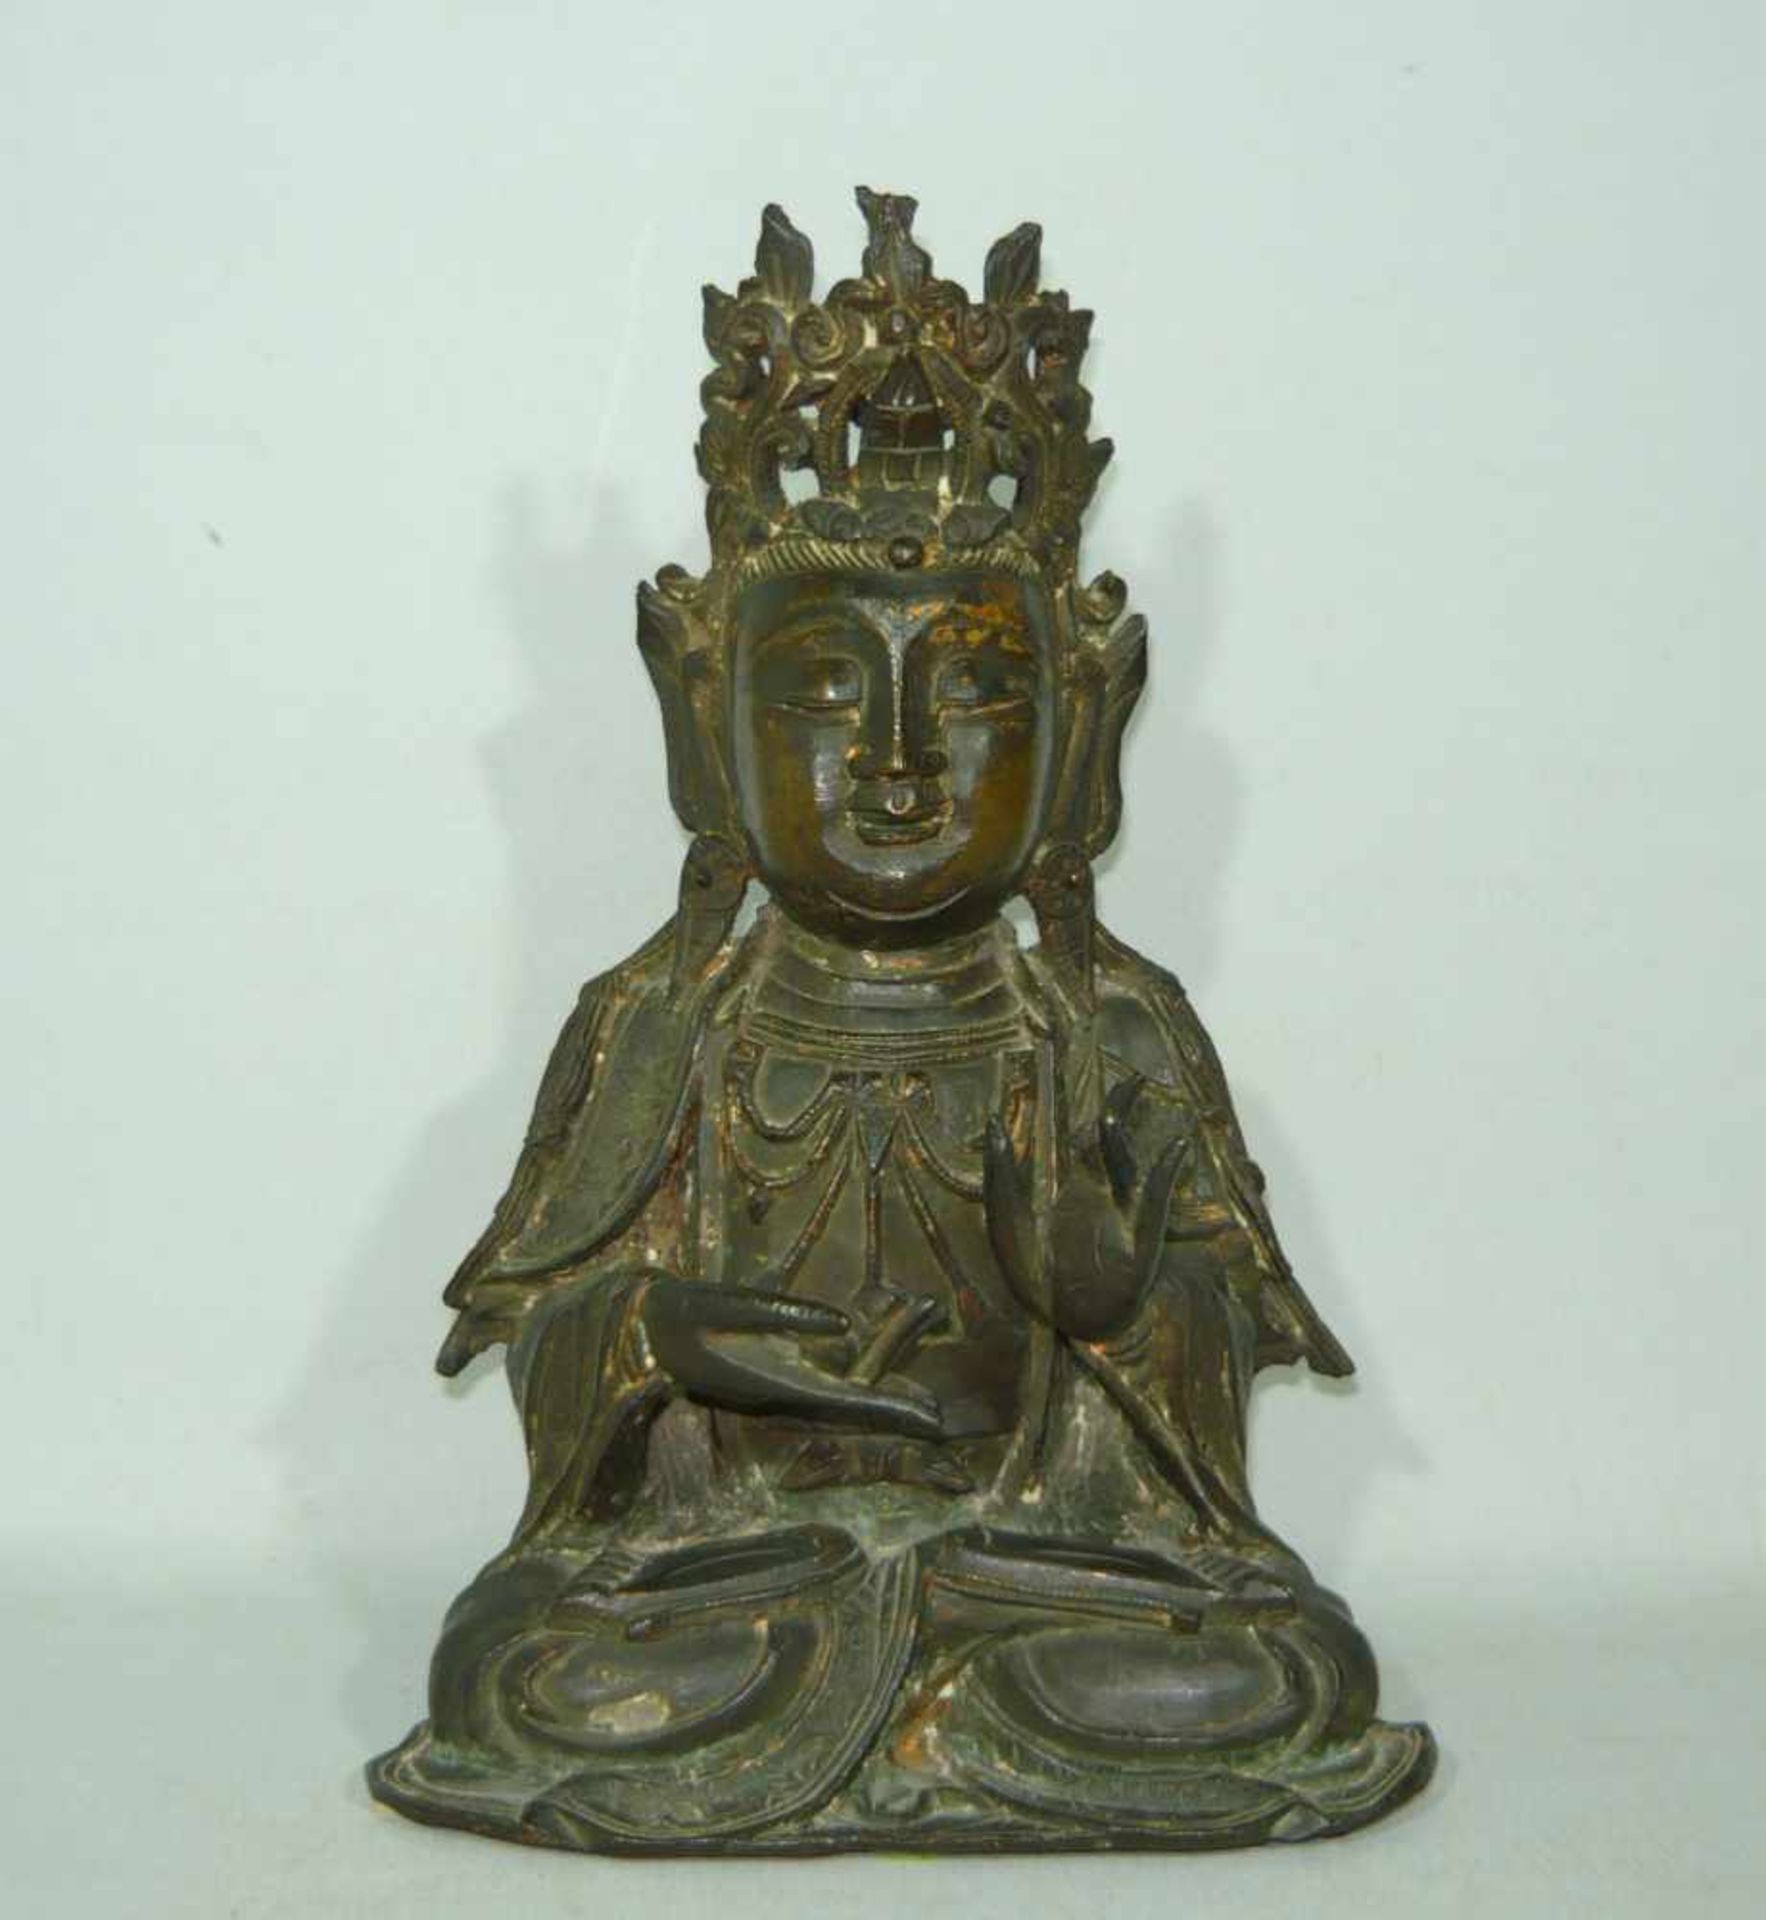 Großer sitzender Buddha. Bronze. Reste alter Vergoldung. Wohl China, 16./17. Jhdt. H. ca. 24 cm. Ein